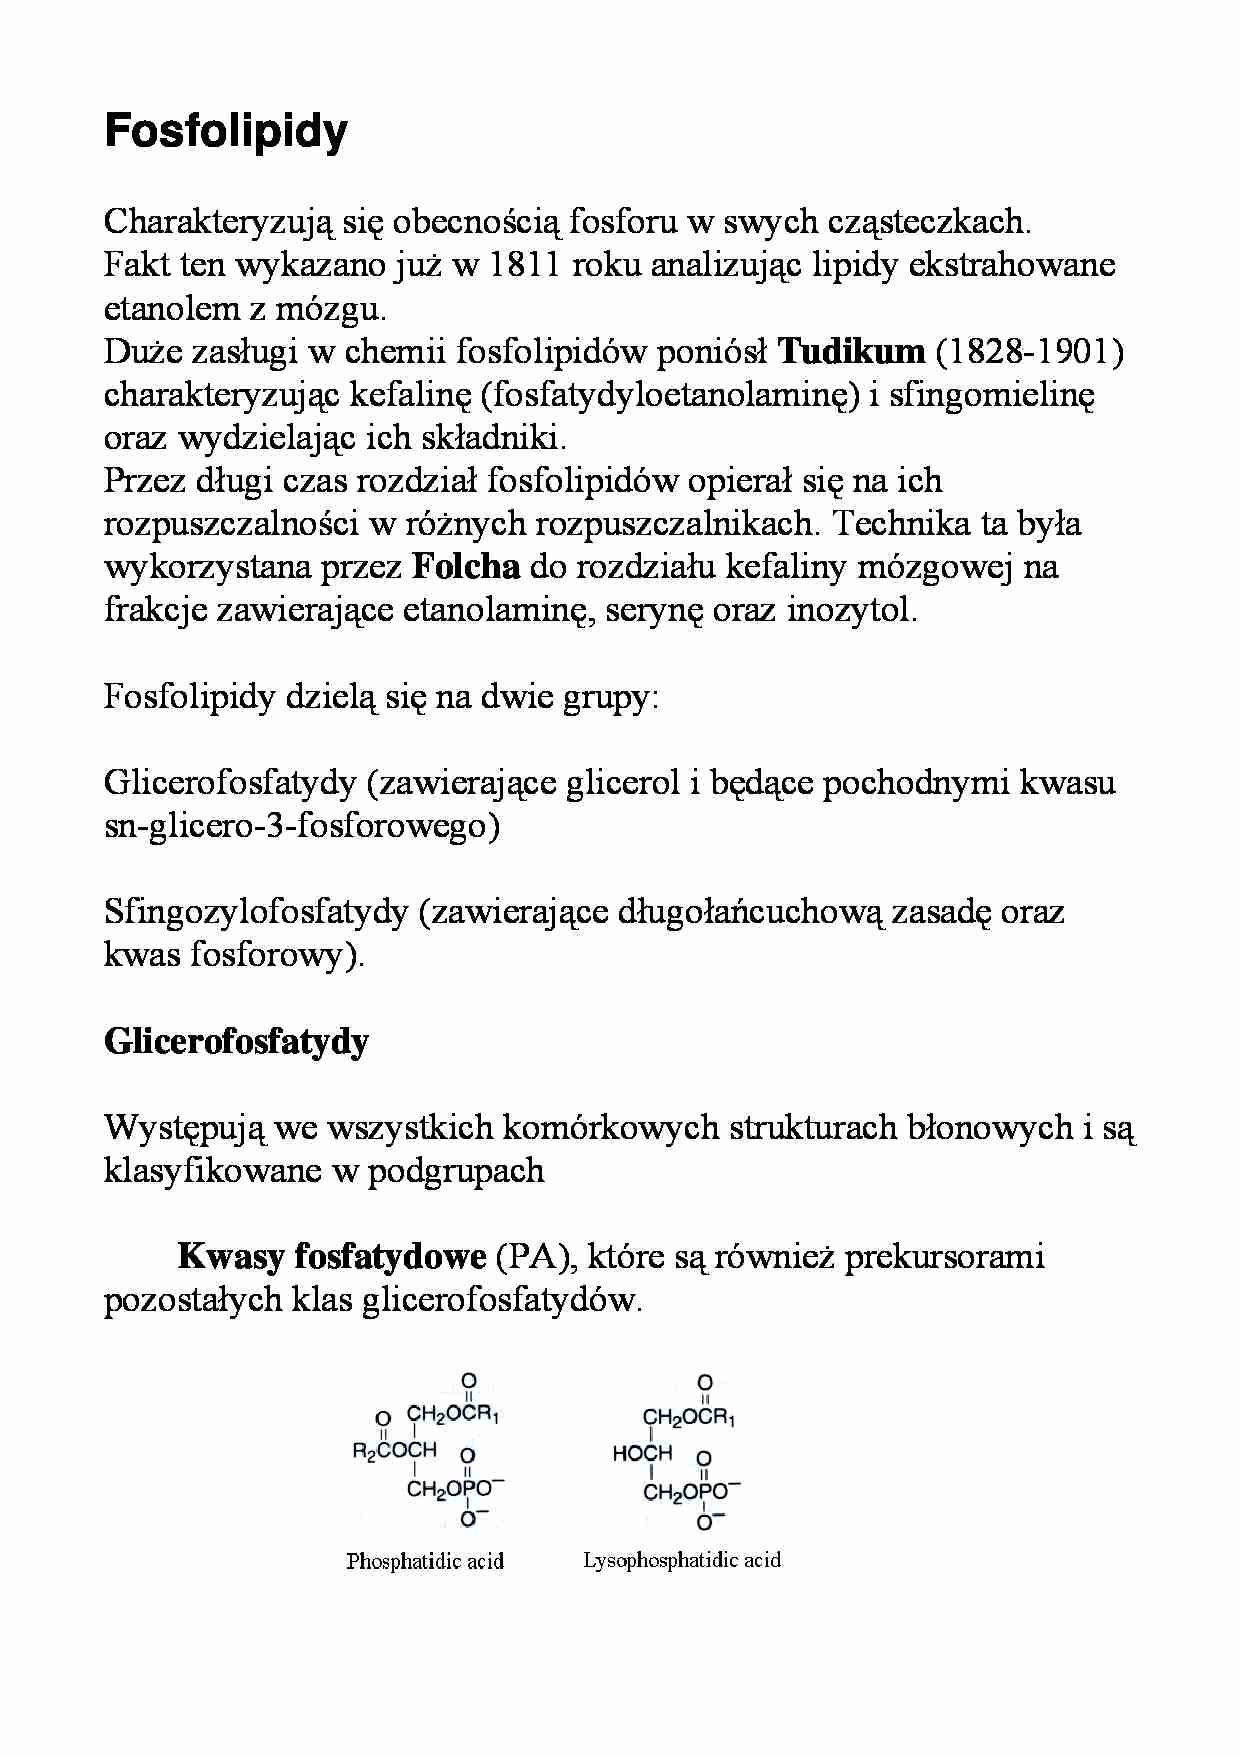 Lipidy - fosfolipidy - strona 1